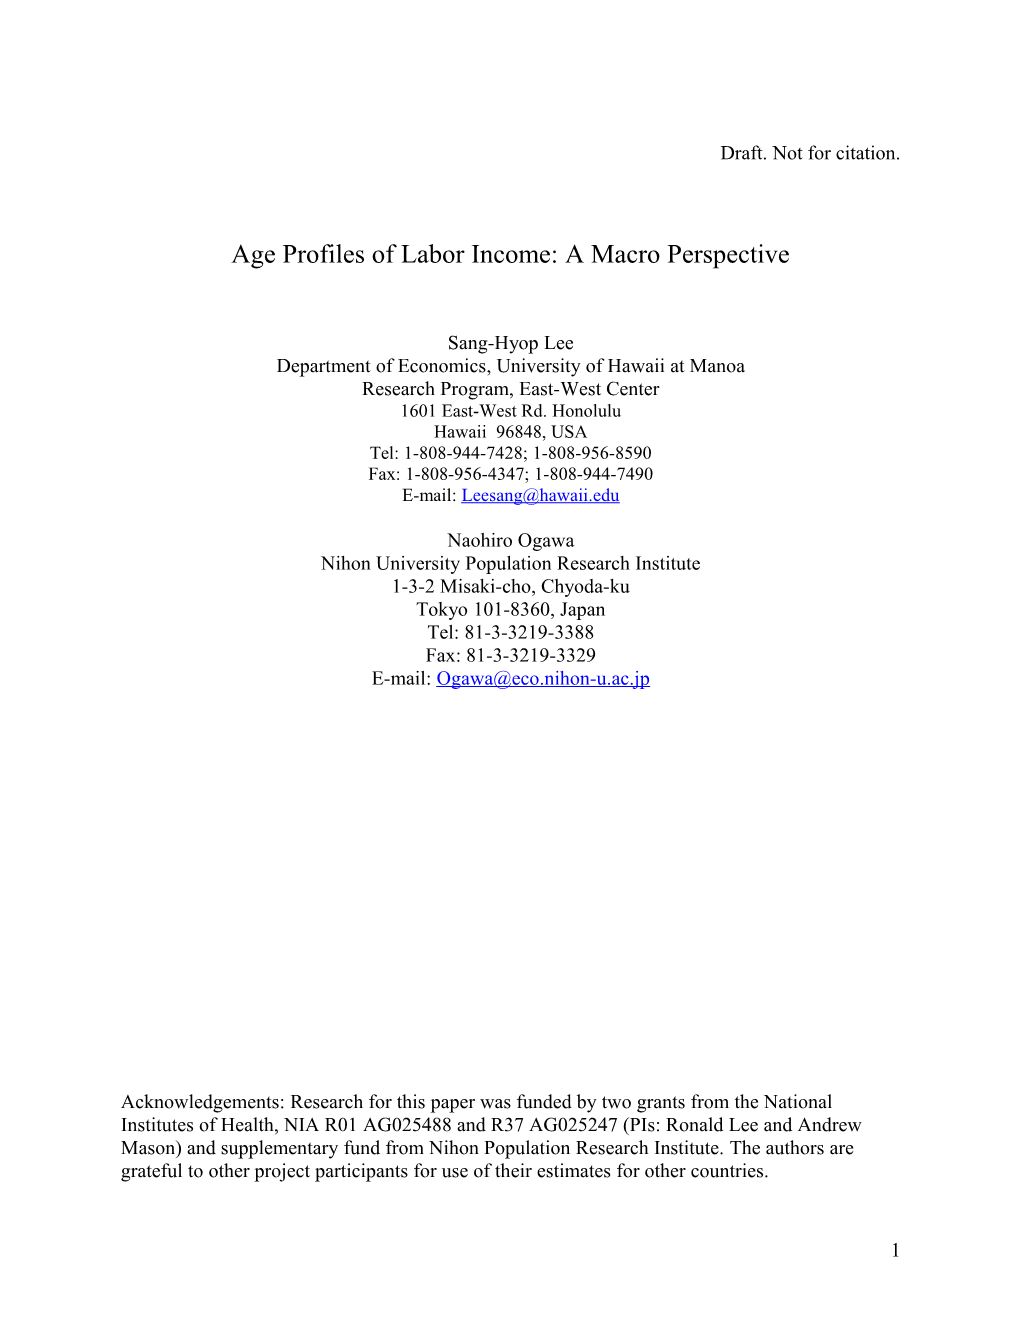 Age Profiles of Labor Income: a Macro Perspective